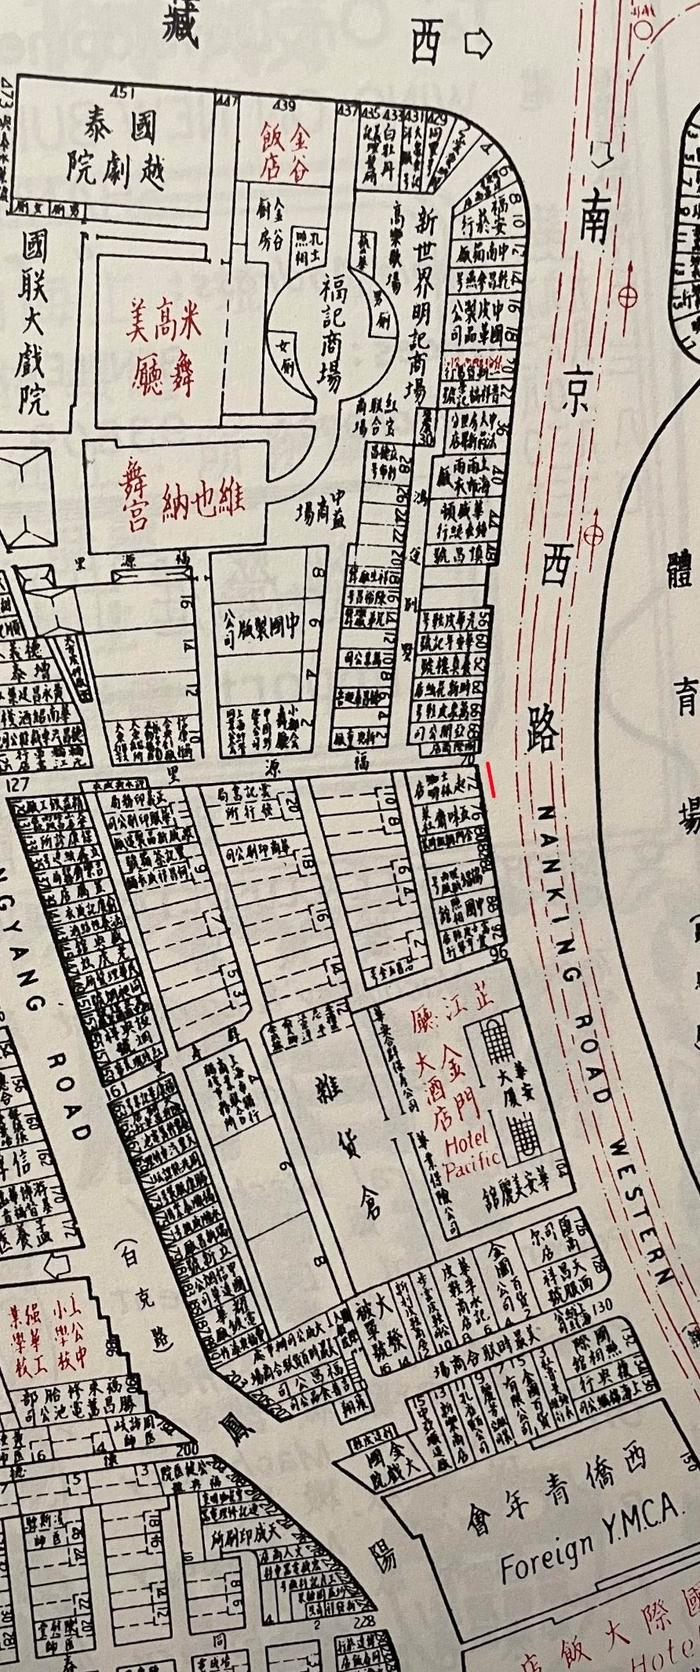 张爱玲的西点店①︱“我家贴隔壁”的上海起士林究竟在哪里？